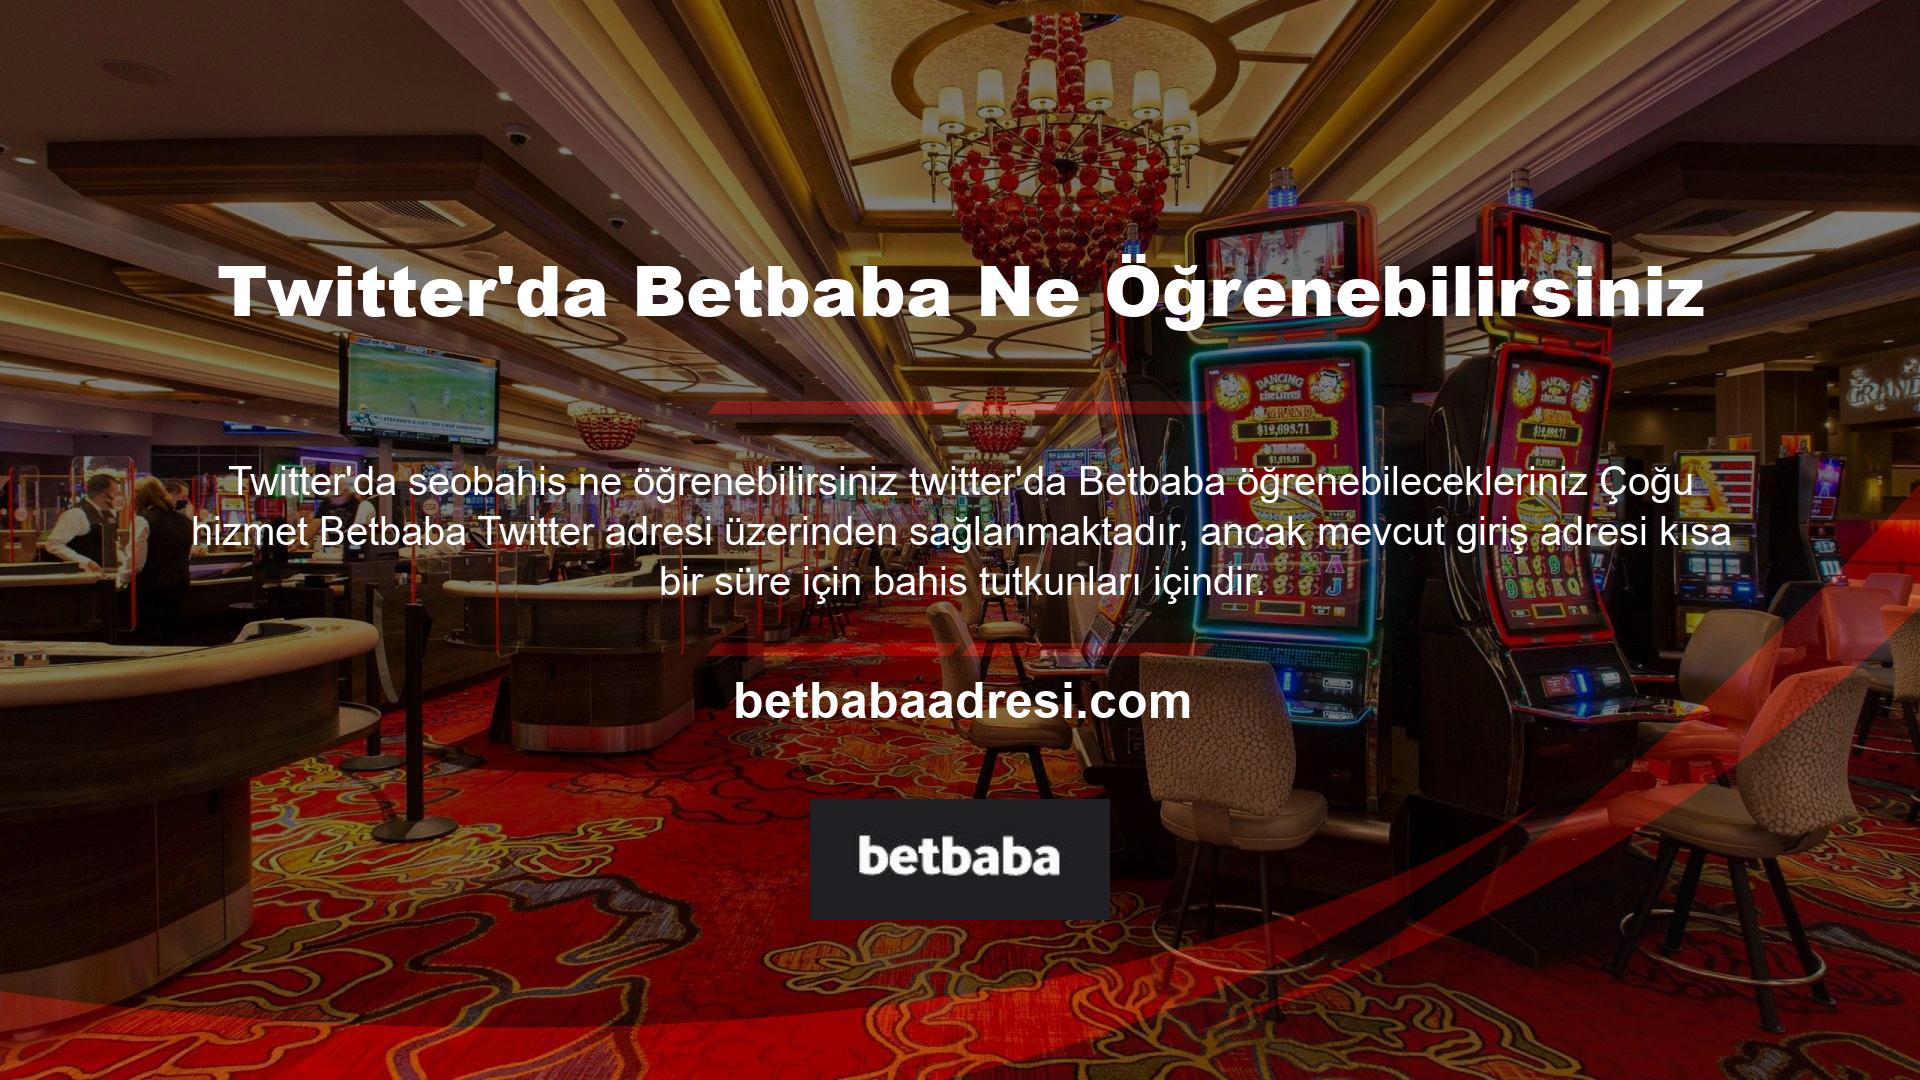 Başlangıçta Betbaba Twitter hesabı bilgilendirme amaçlı kullanıldı